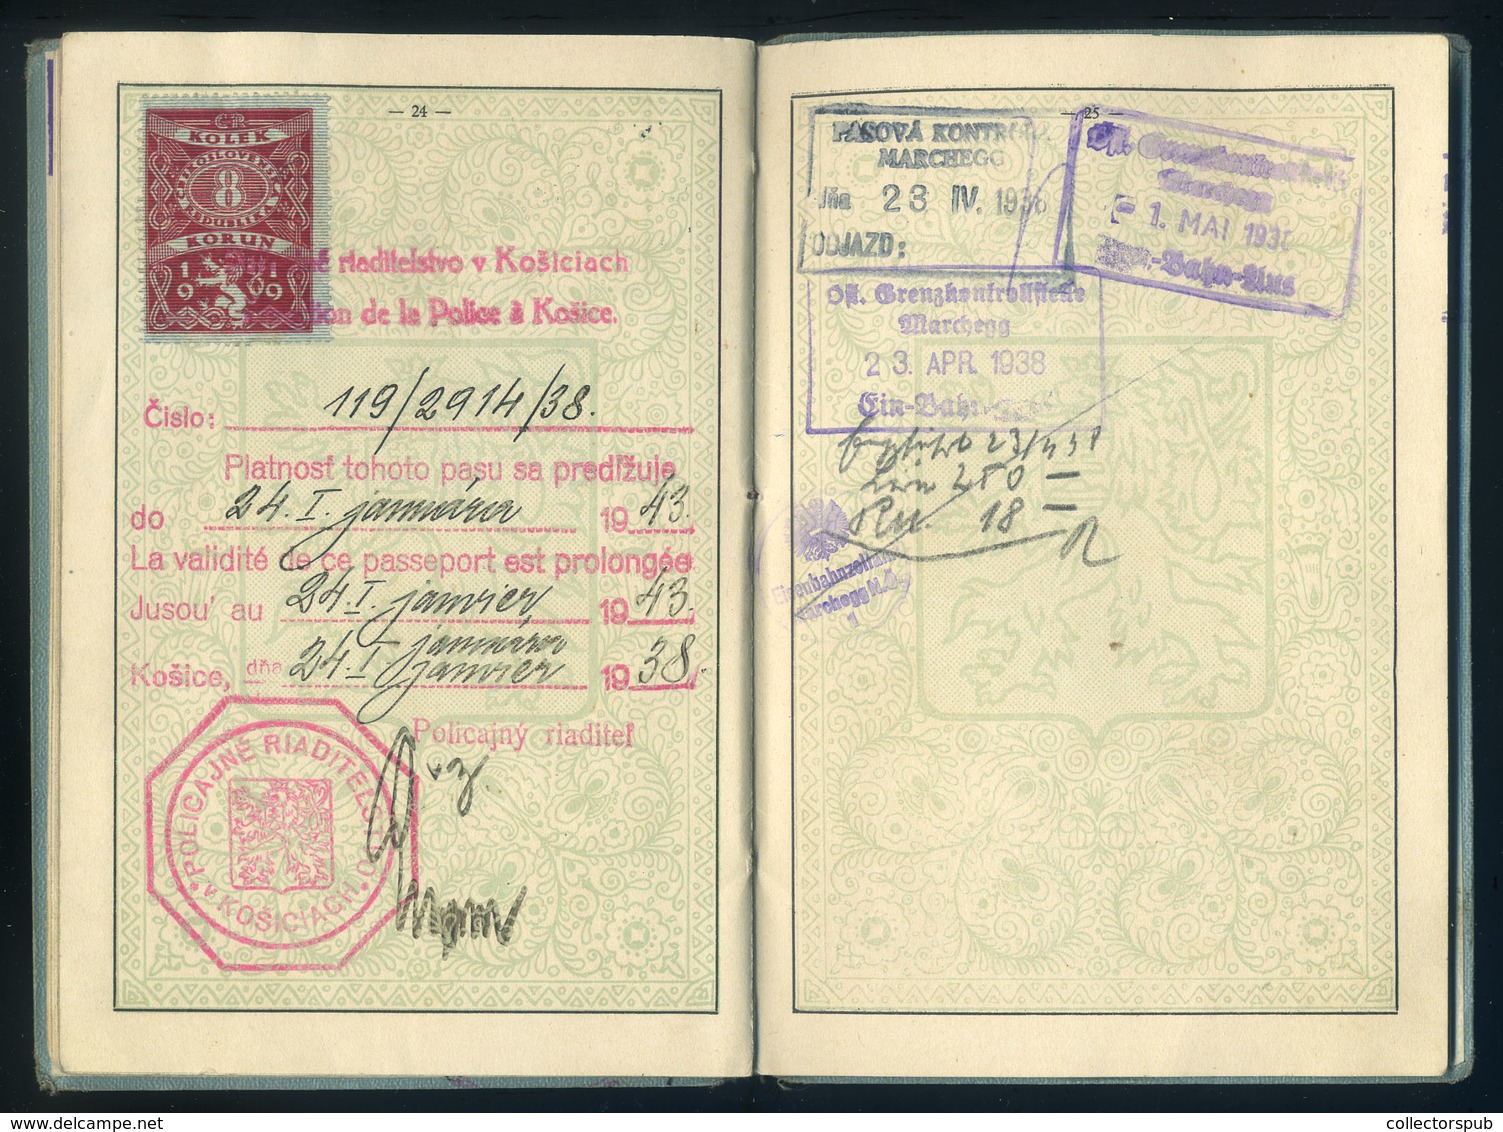 KASSA 1926 Csehszlovákia, fényképes útlevél (2 oldalon konzuli illetékbélyegek)  /  Czechoslovakia photo passport (consu